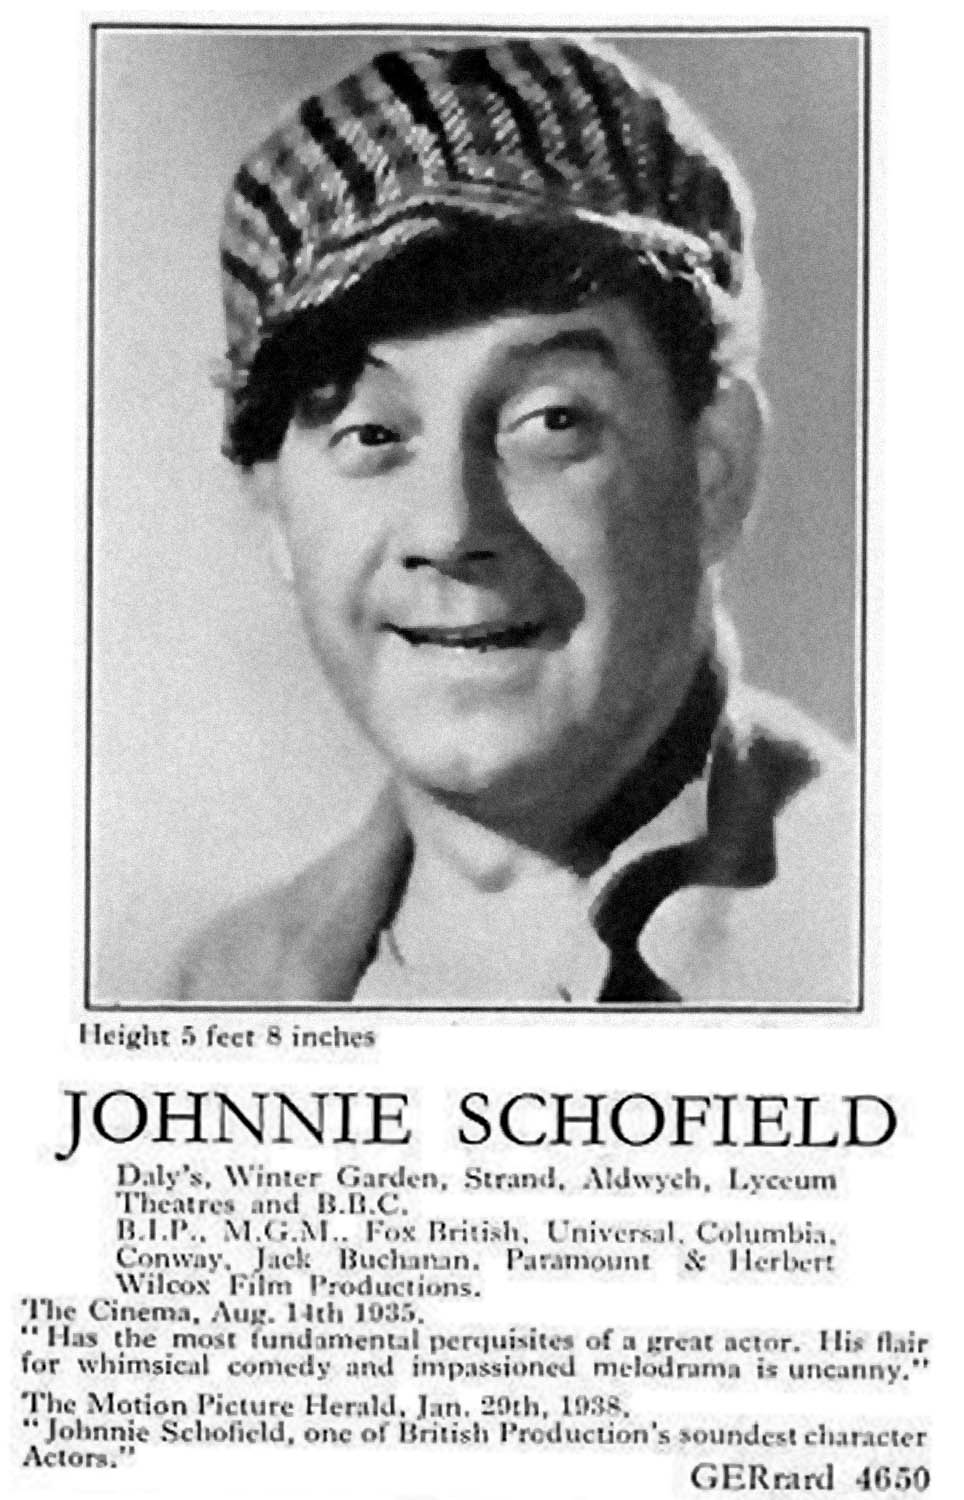 Johnnie Schofield